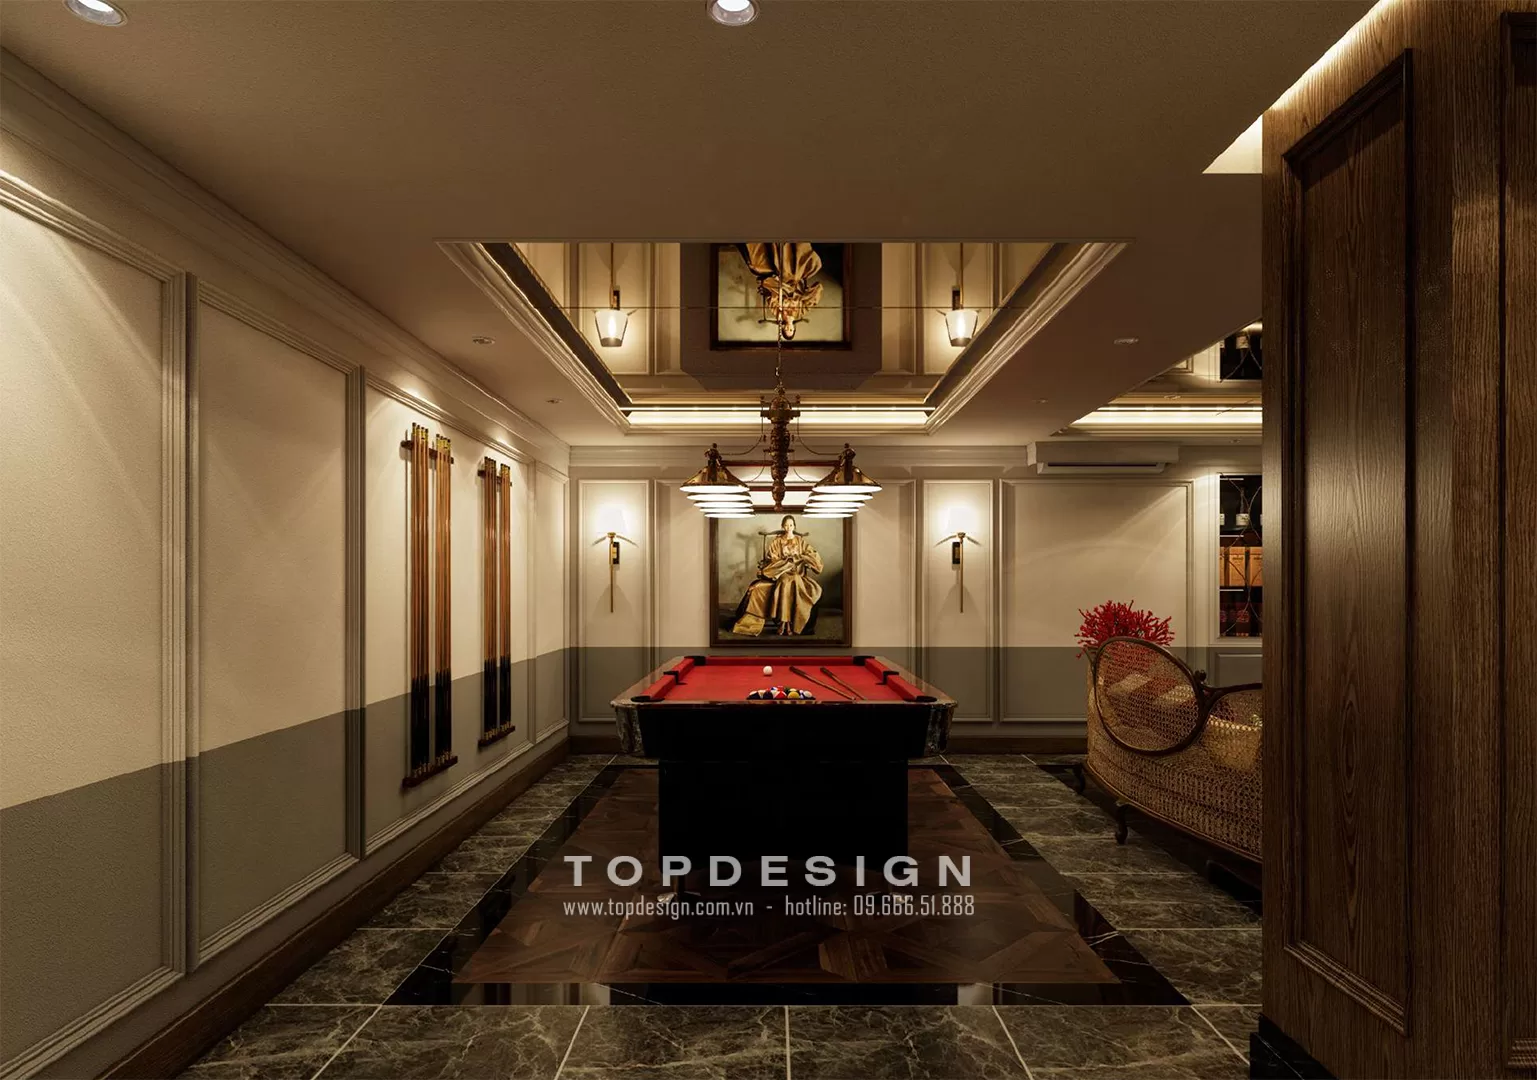 9. Thiết kế nội thất tầng hầm biệt thự sang trọng - TOPDESIGN- khu vực giải trí